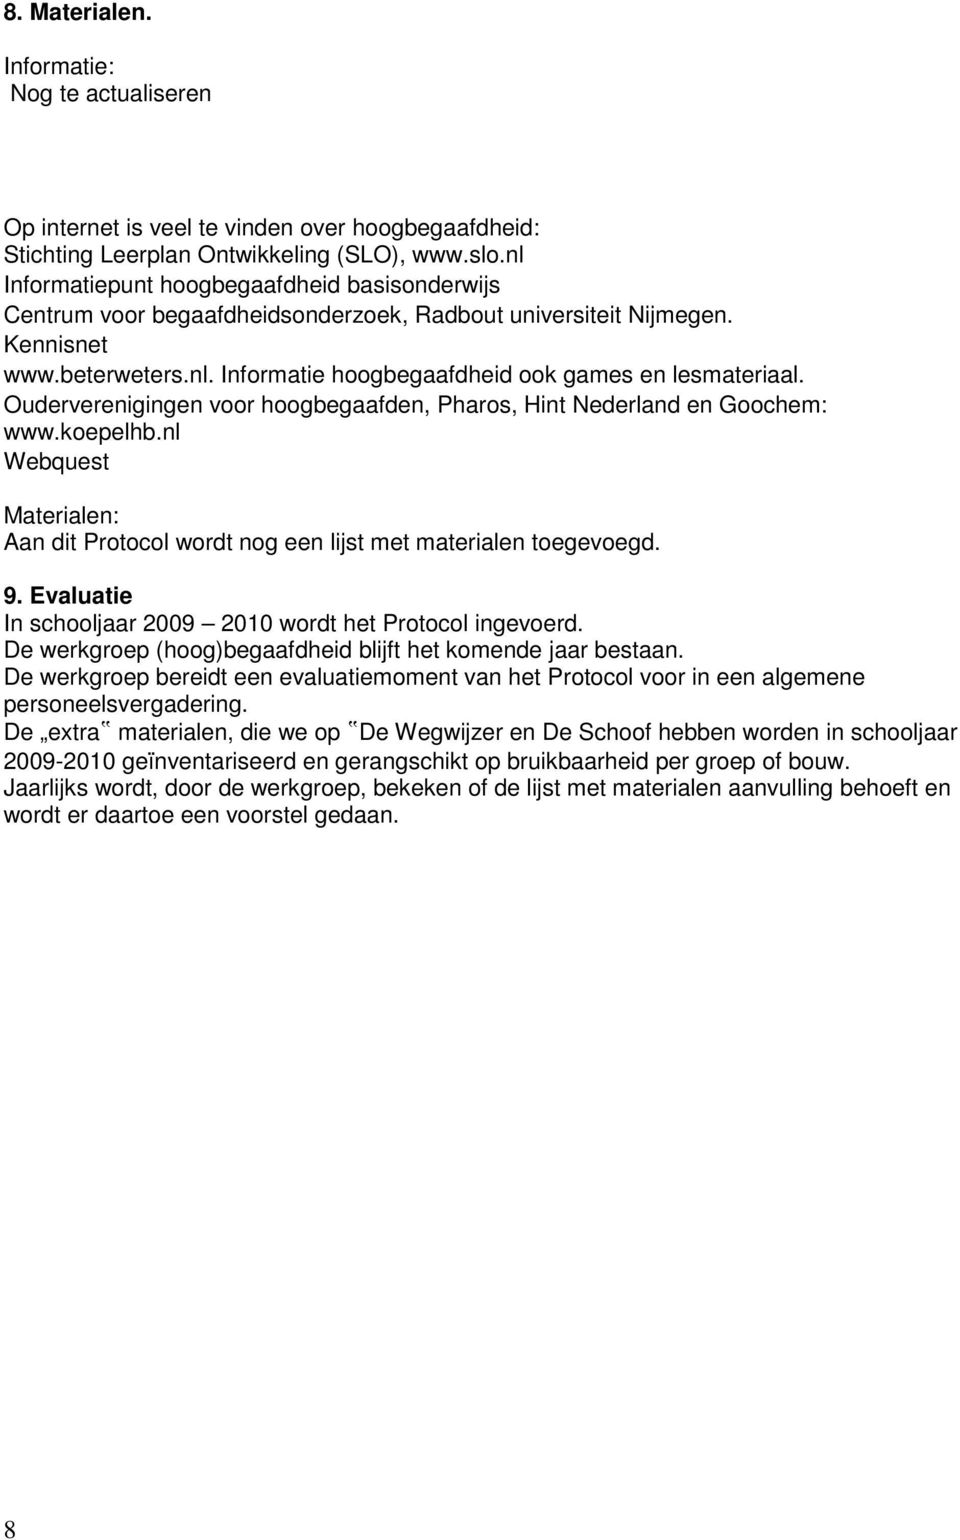 Ouderverenigingen voor hoogbegaafden, Pharos, Hint Nederland en Goochem: www.koepelhb.nl Webquest Materialen: Aan dit Protocol wordt nog een lijst met materialen toegevoegd. 9.